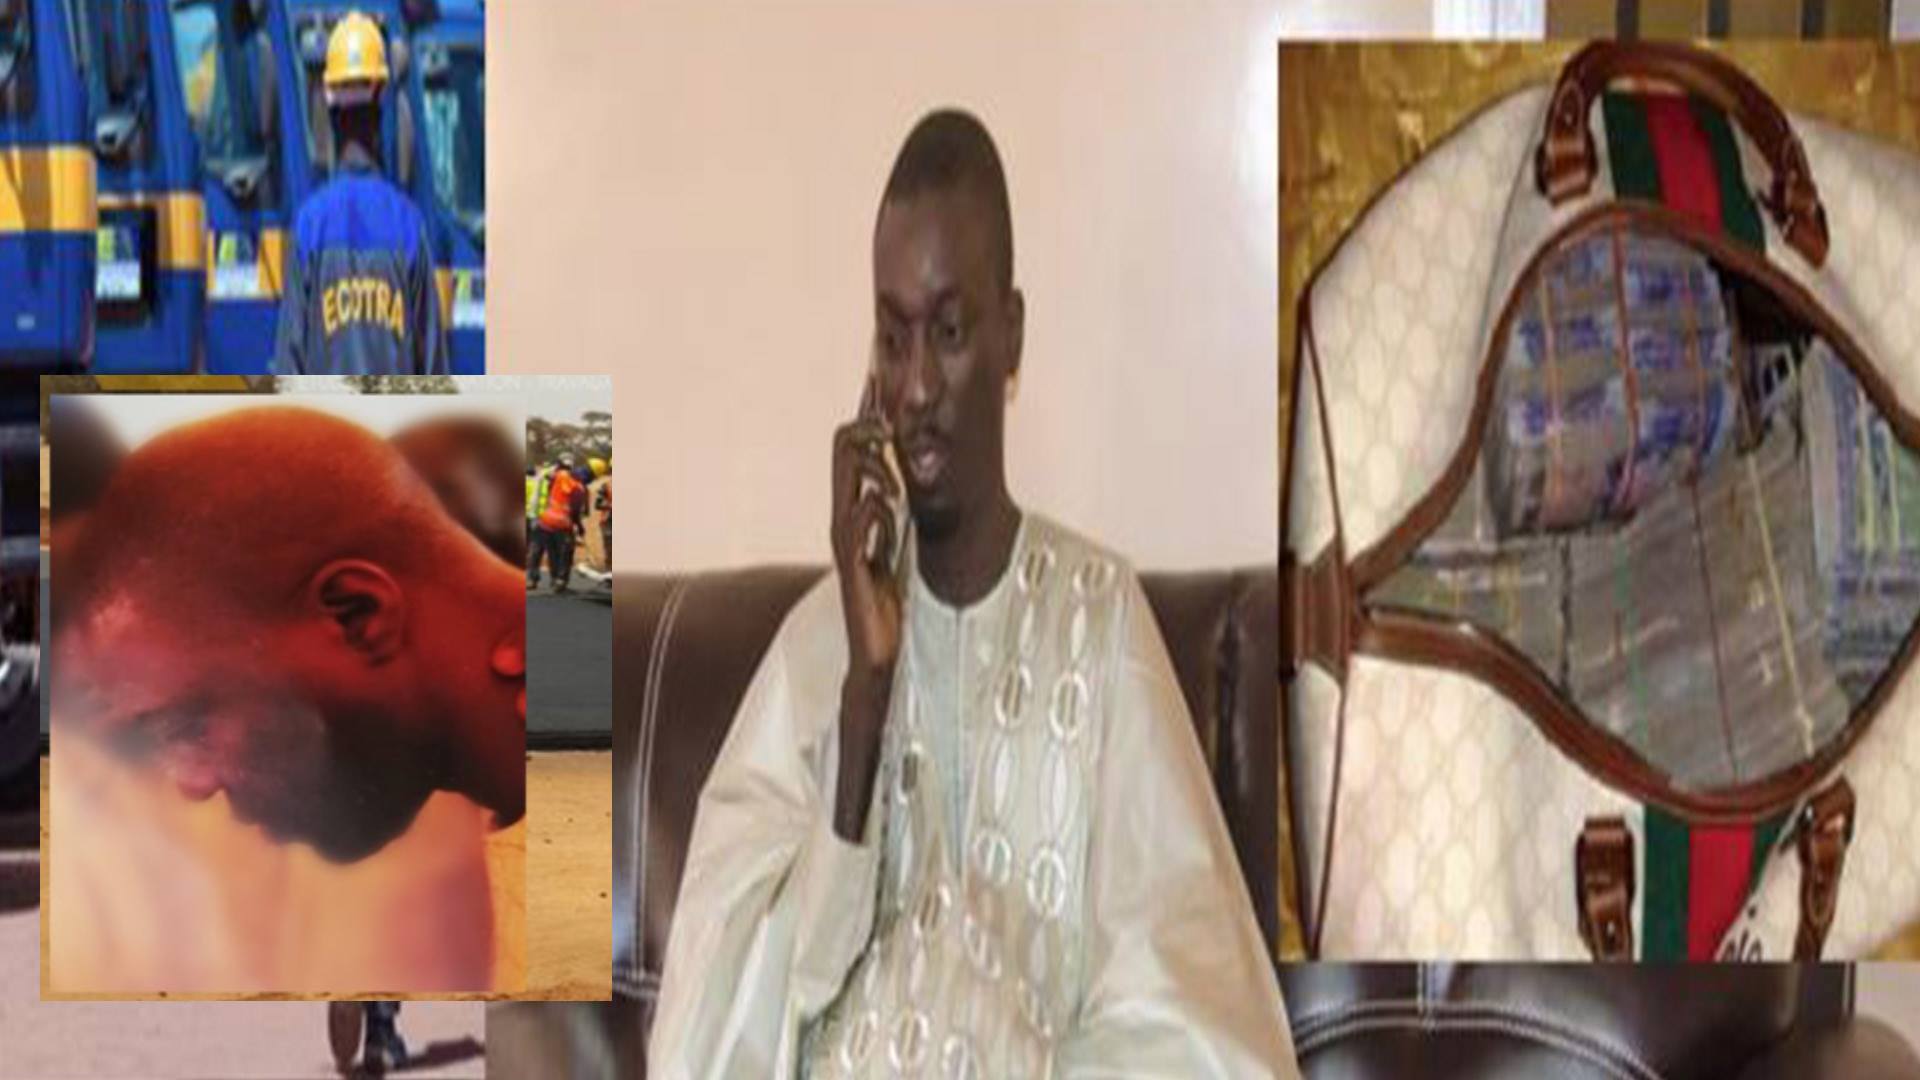 Litige Abdoulaye Sylla Ecotra et Serigne Ahma Mbacké , Entre vengeance et chantage (Enquête)